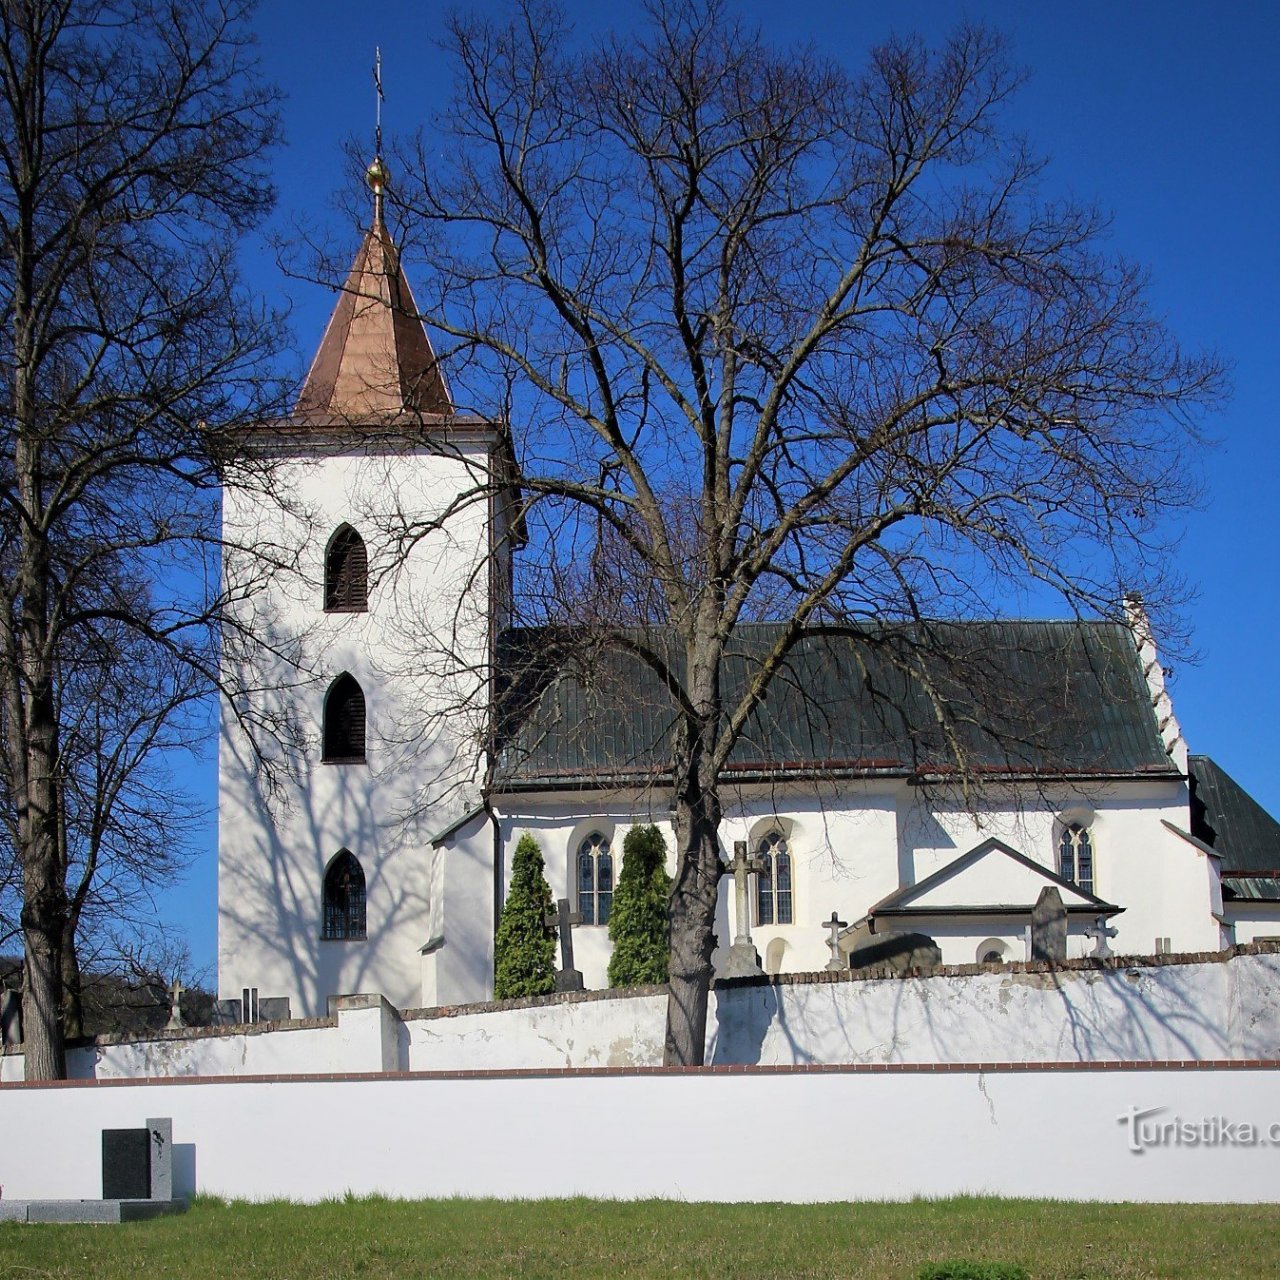 Lelekovice - kostel sv. Filipa a Jakuba